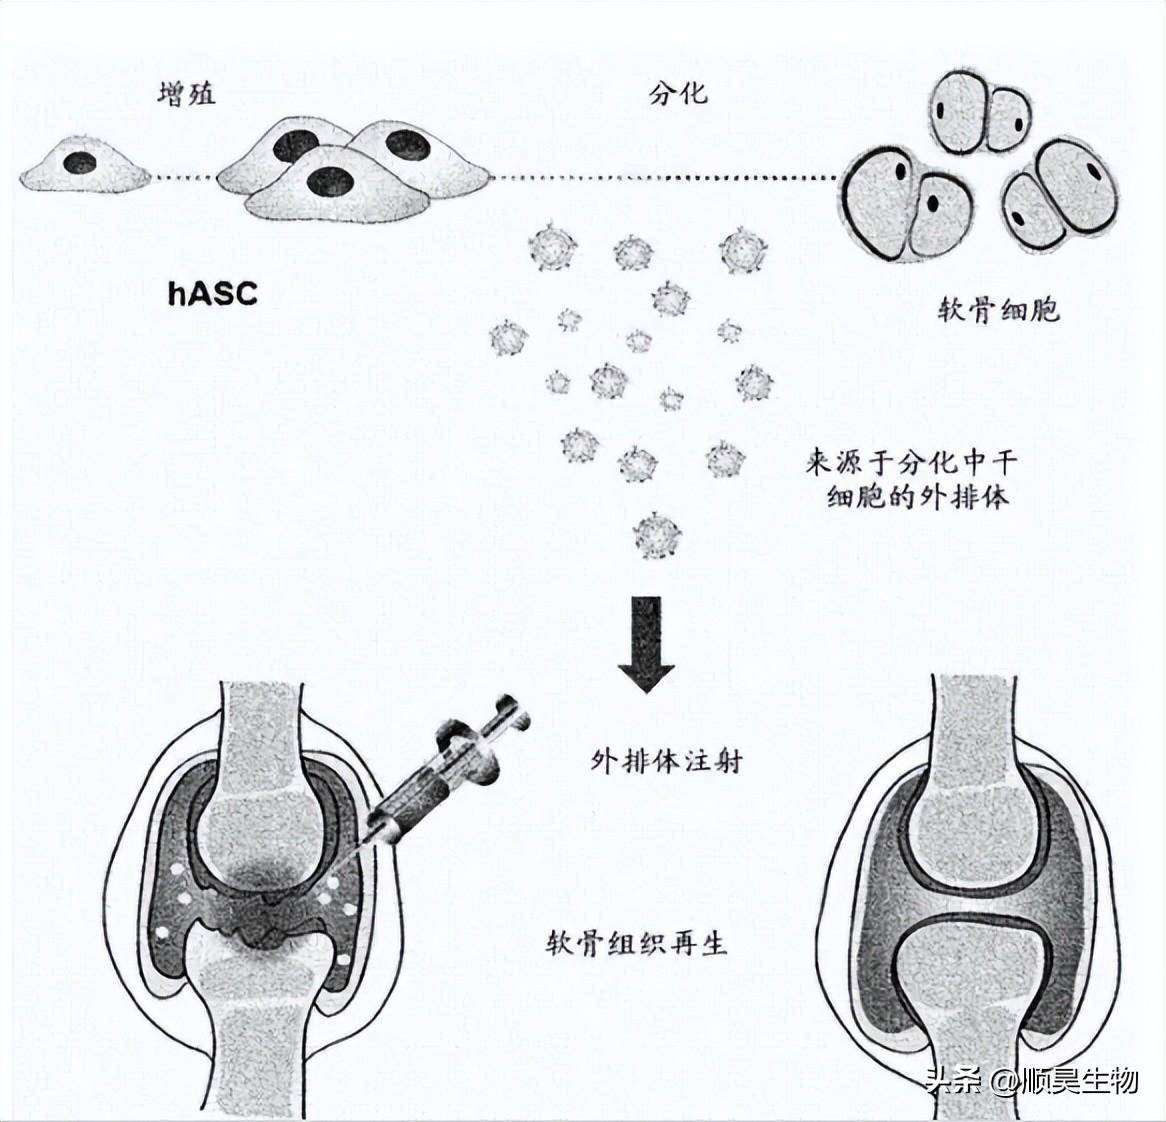 临床真实案例:干细胞治疗膝骨关节炎安全有效!